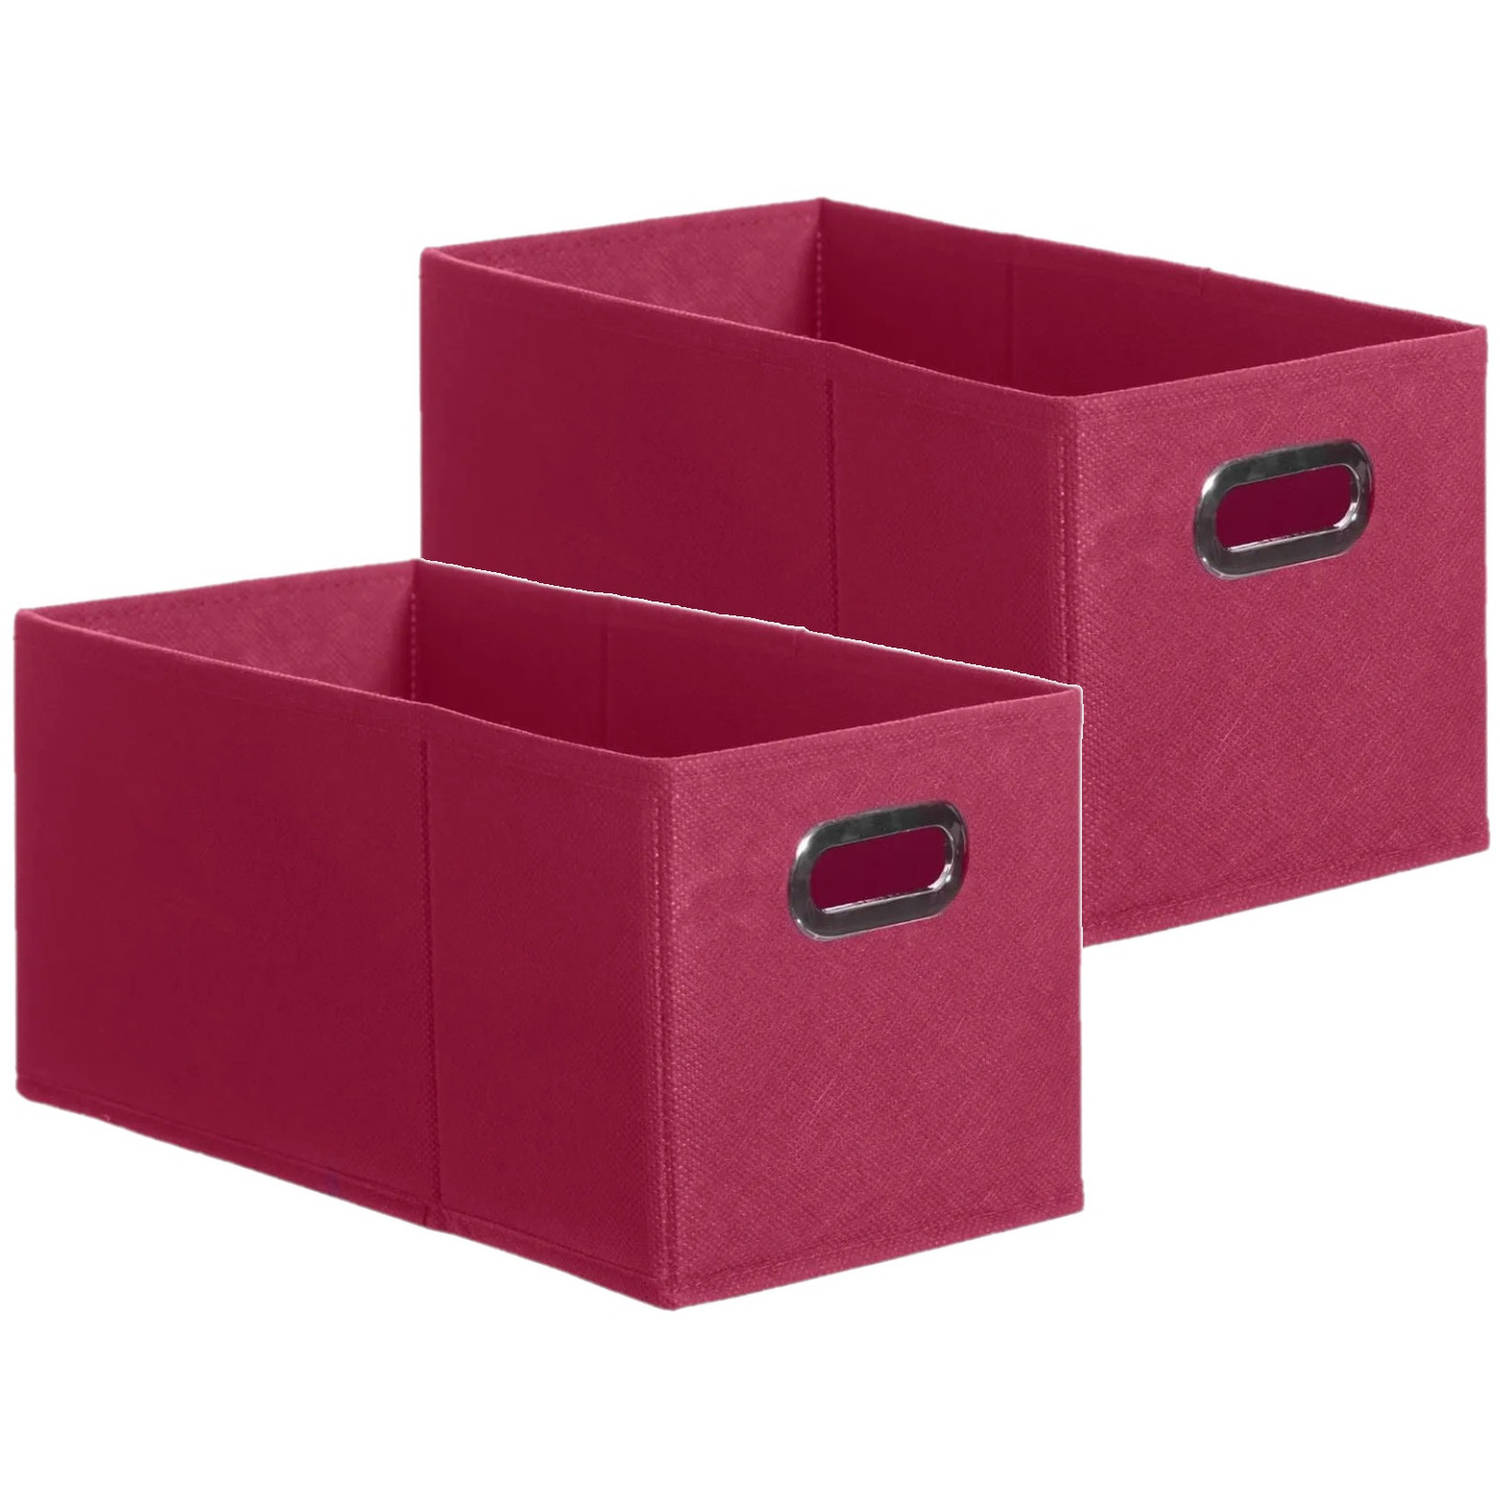 Set van 2x stuks opbergmand/kastmand 7 liter framboos roze linnen 31 x 15 x 15 cm - Opbergmanden